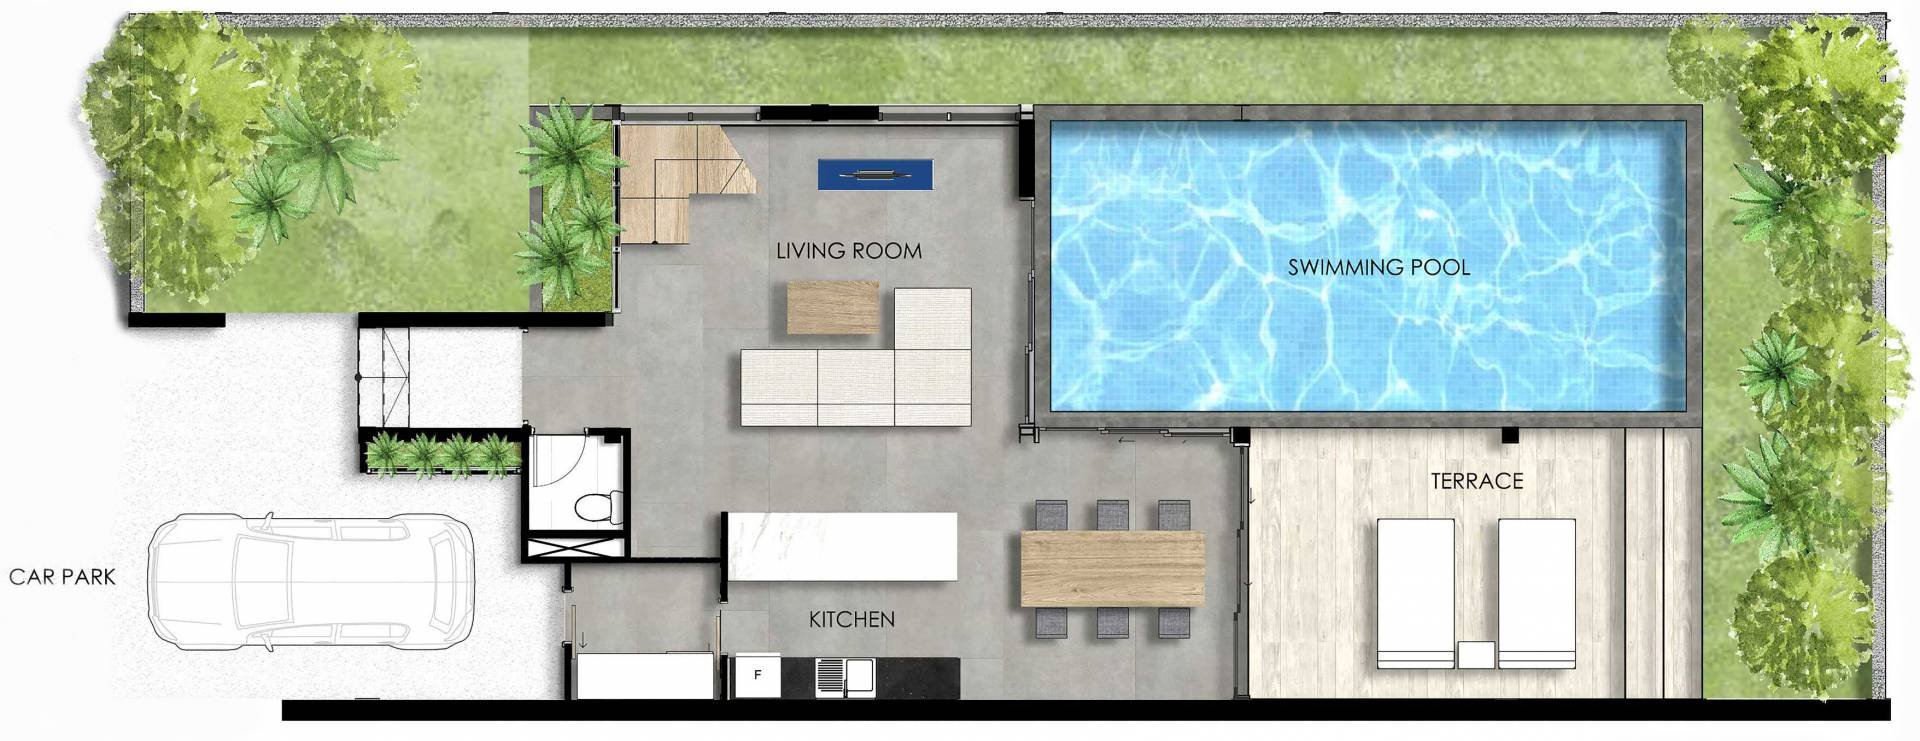 2-Bedroom Villa - Lower Floor